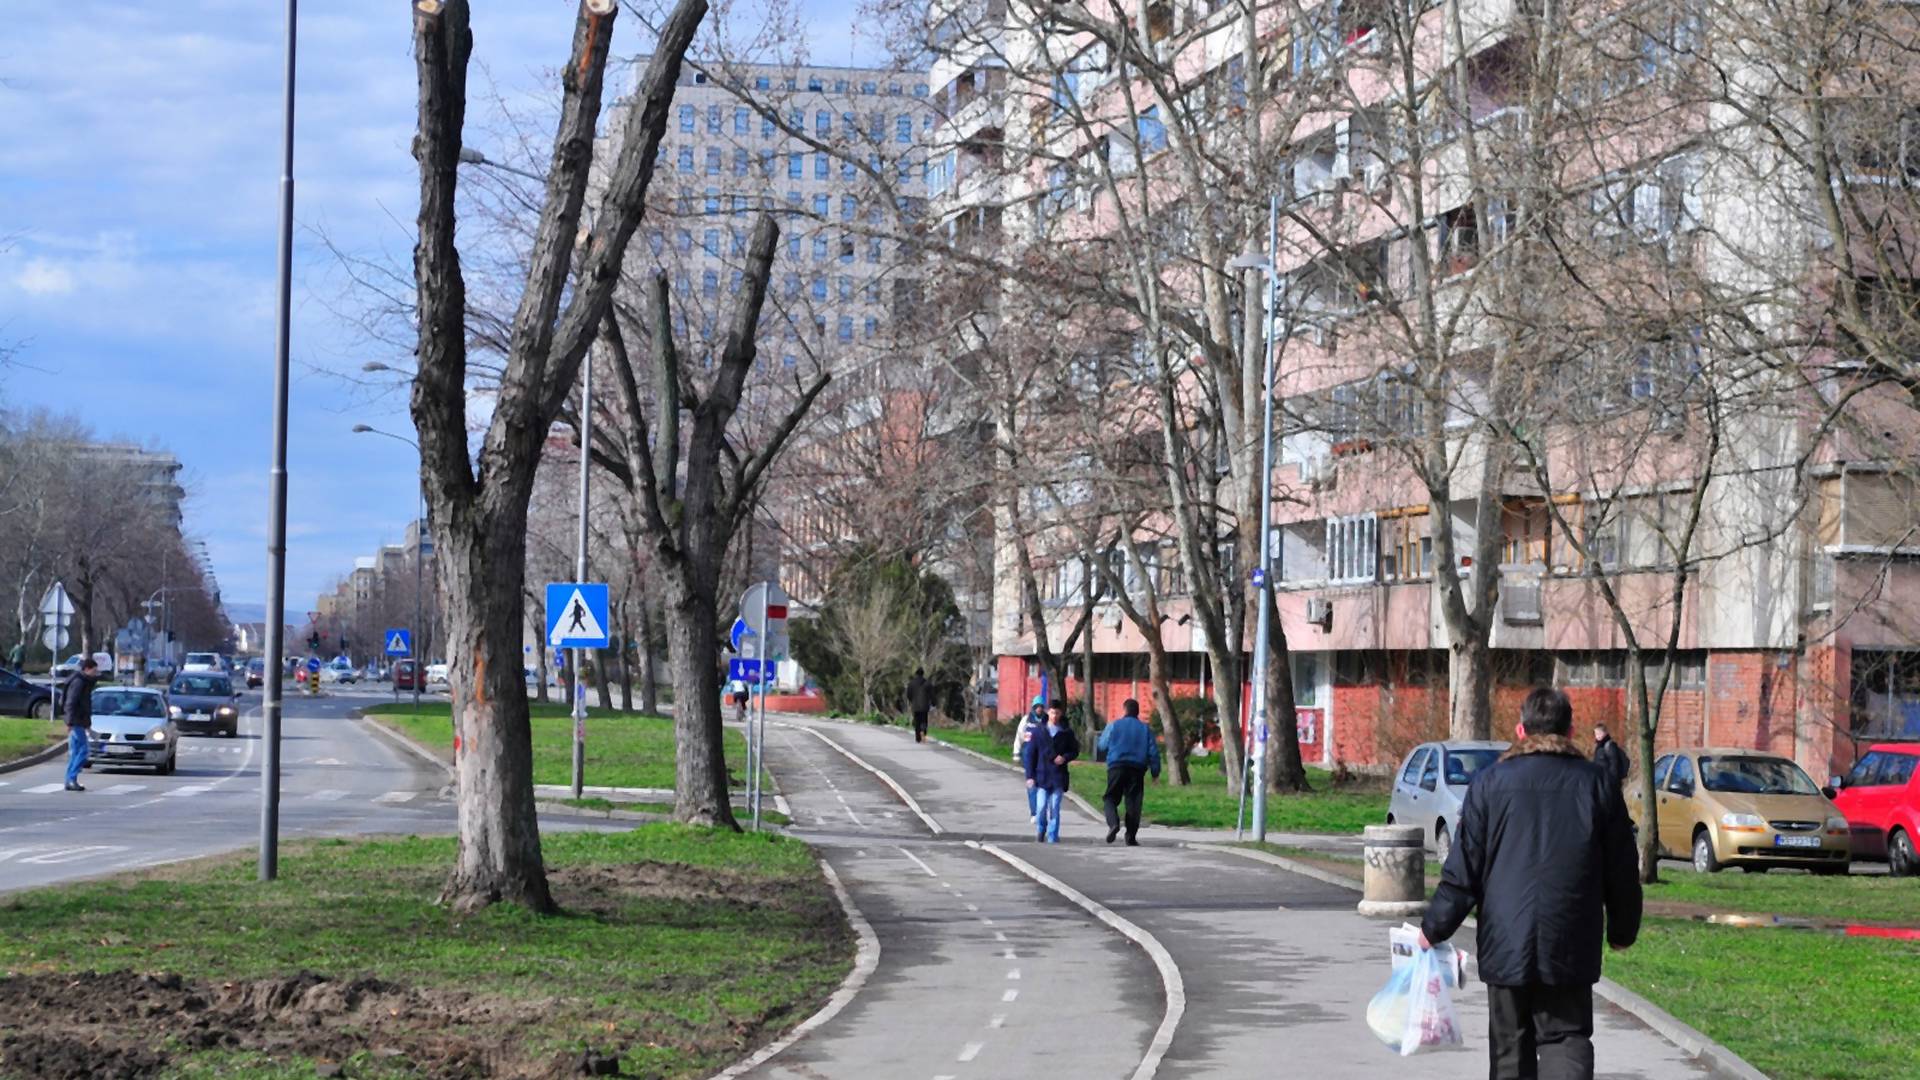 Gazda za 180 evra izdaje stan u Novom Sadu u kojem nijedan čovek ne može normalno da živi i imamo poruku za njega